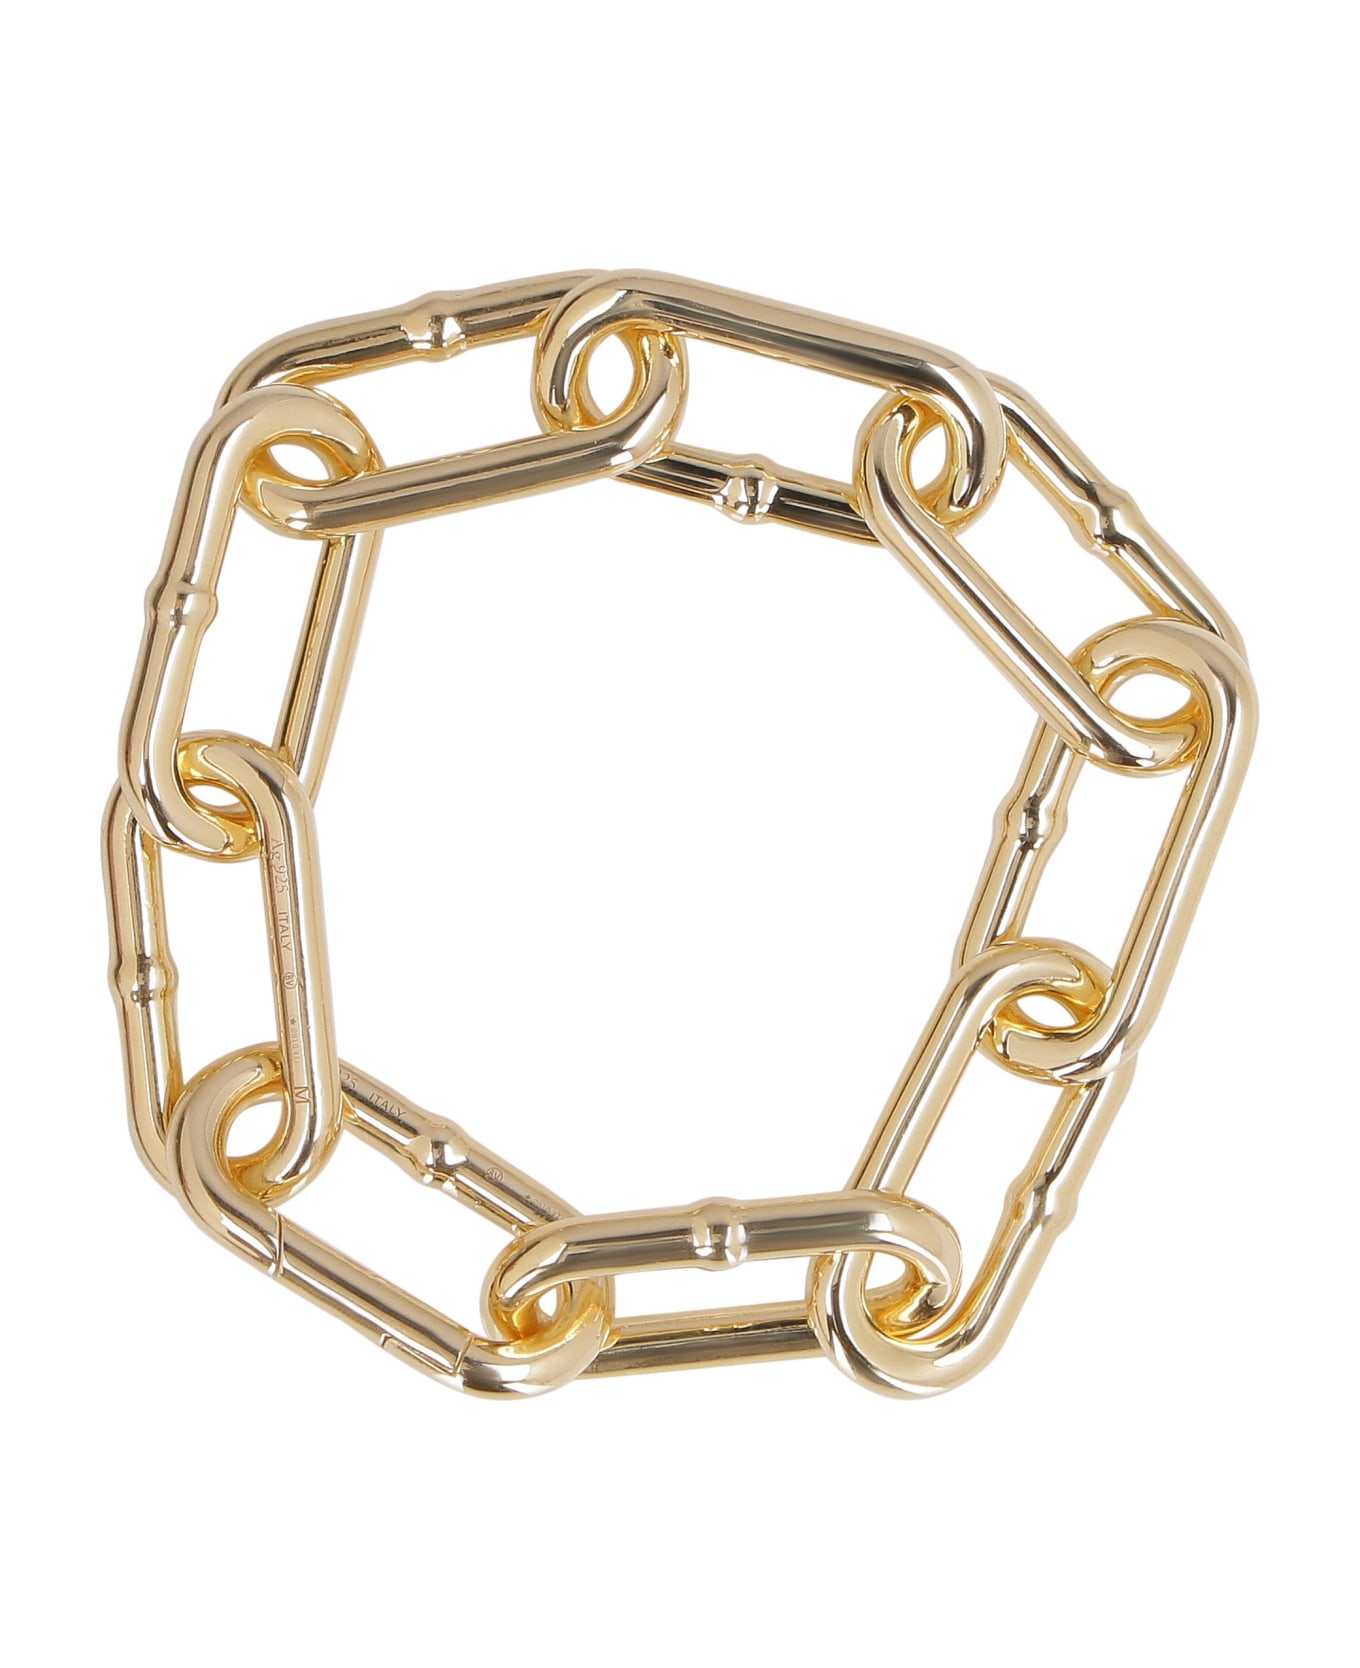 Bottega Veneta Plated Silver Chain Bracelet - Gold ブレスレット